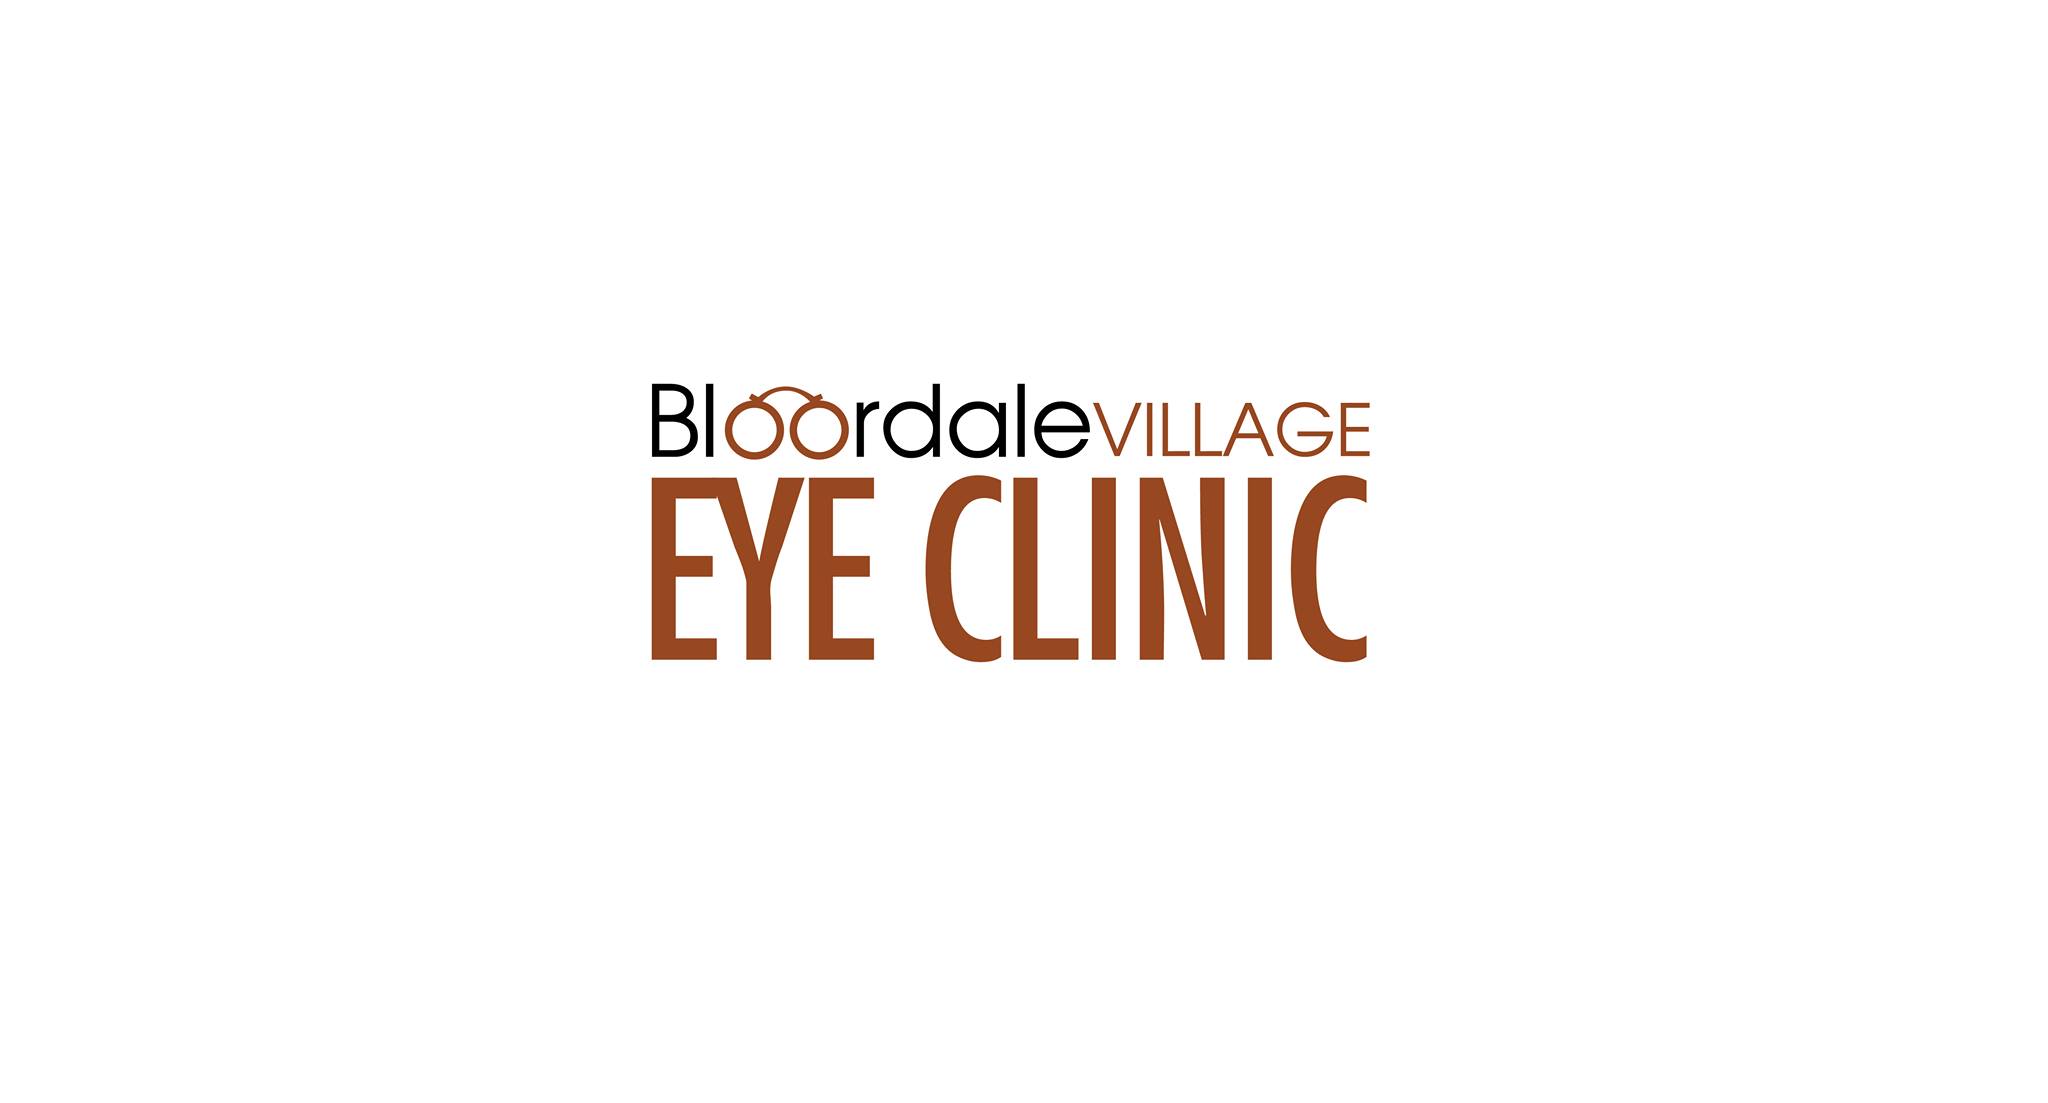 Bloordale Village Eye Clinic